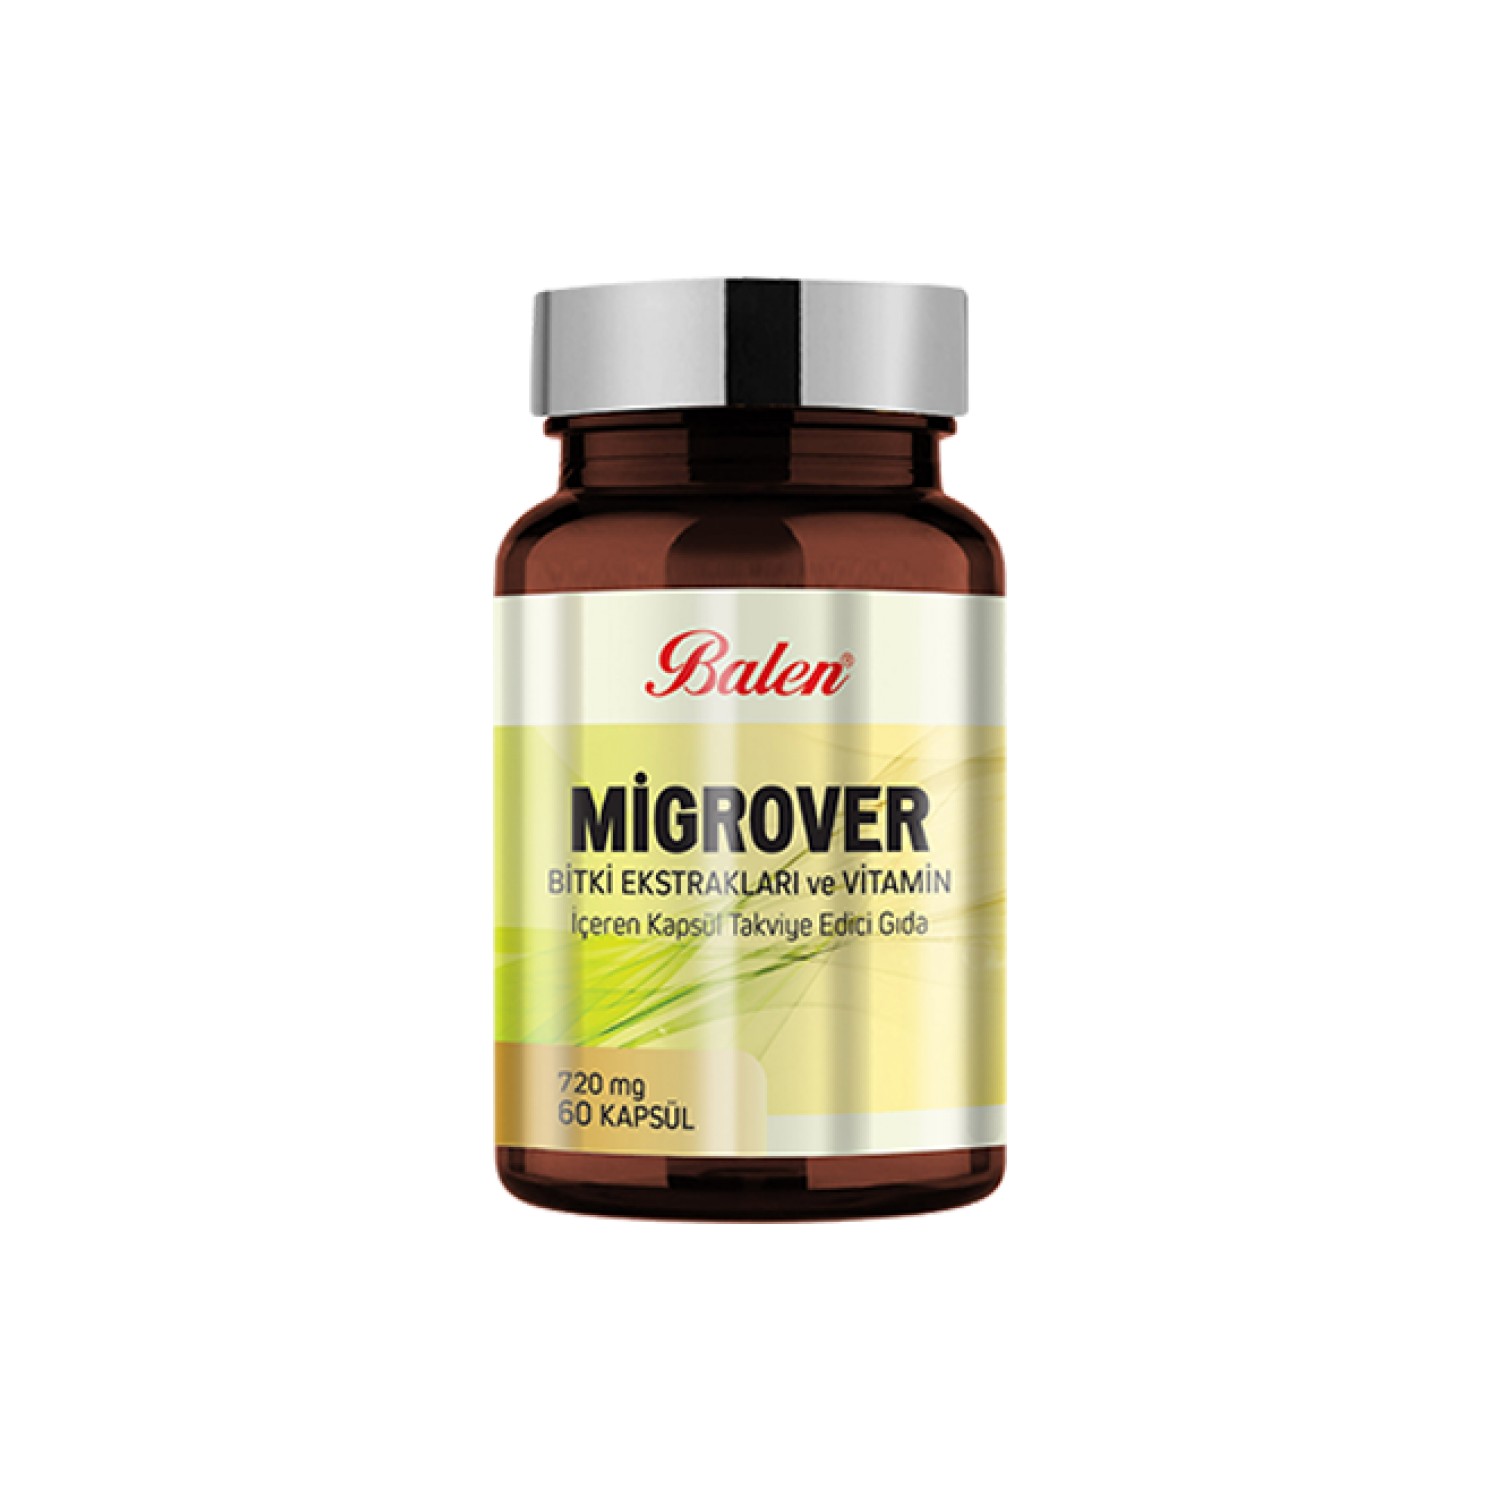 Экстракты трав и витаминов Migrover 720 мг, 60 капсул капсулы balen migrover содержащие растительные экстракты и витамины 60 капсул 720 мг